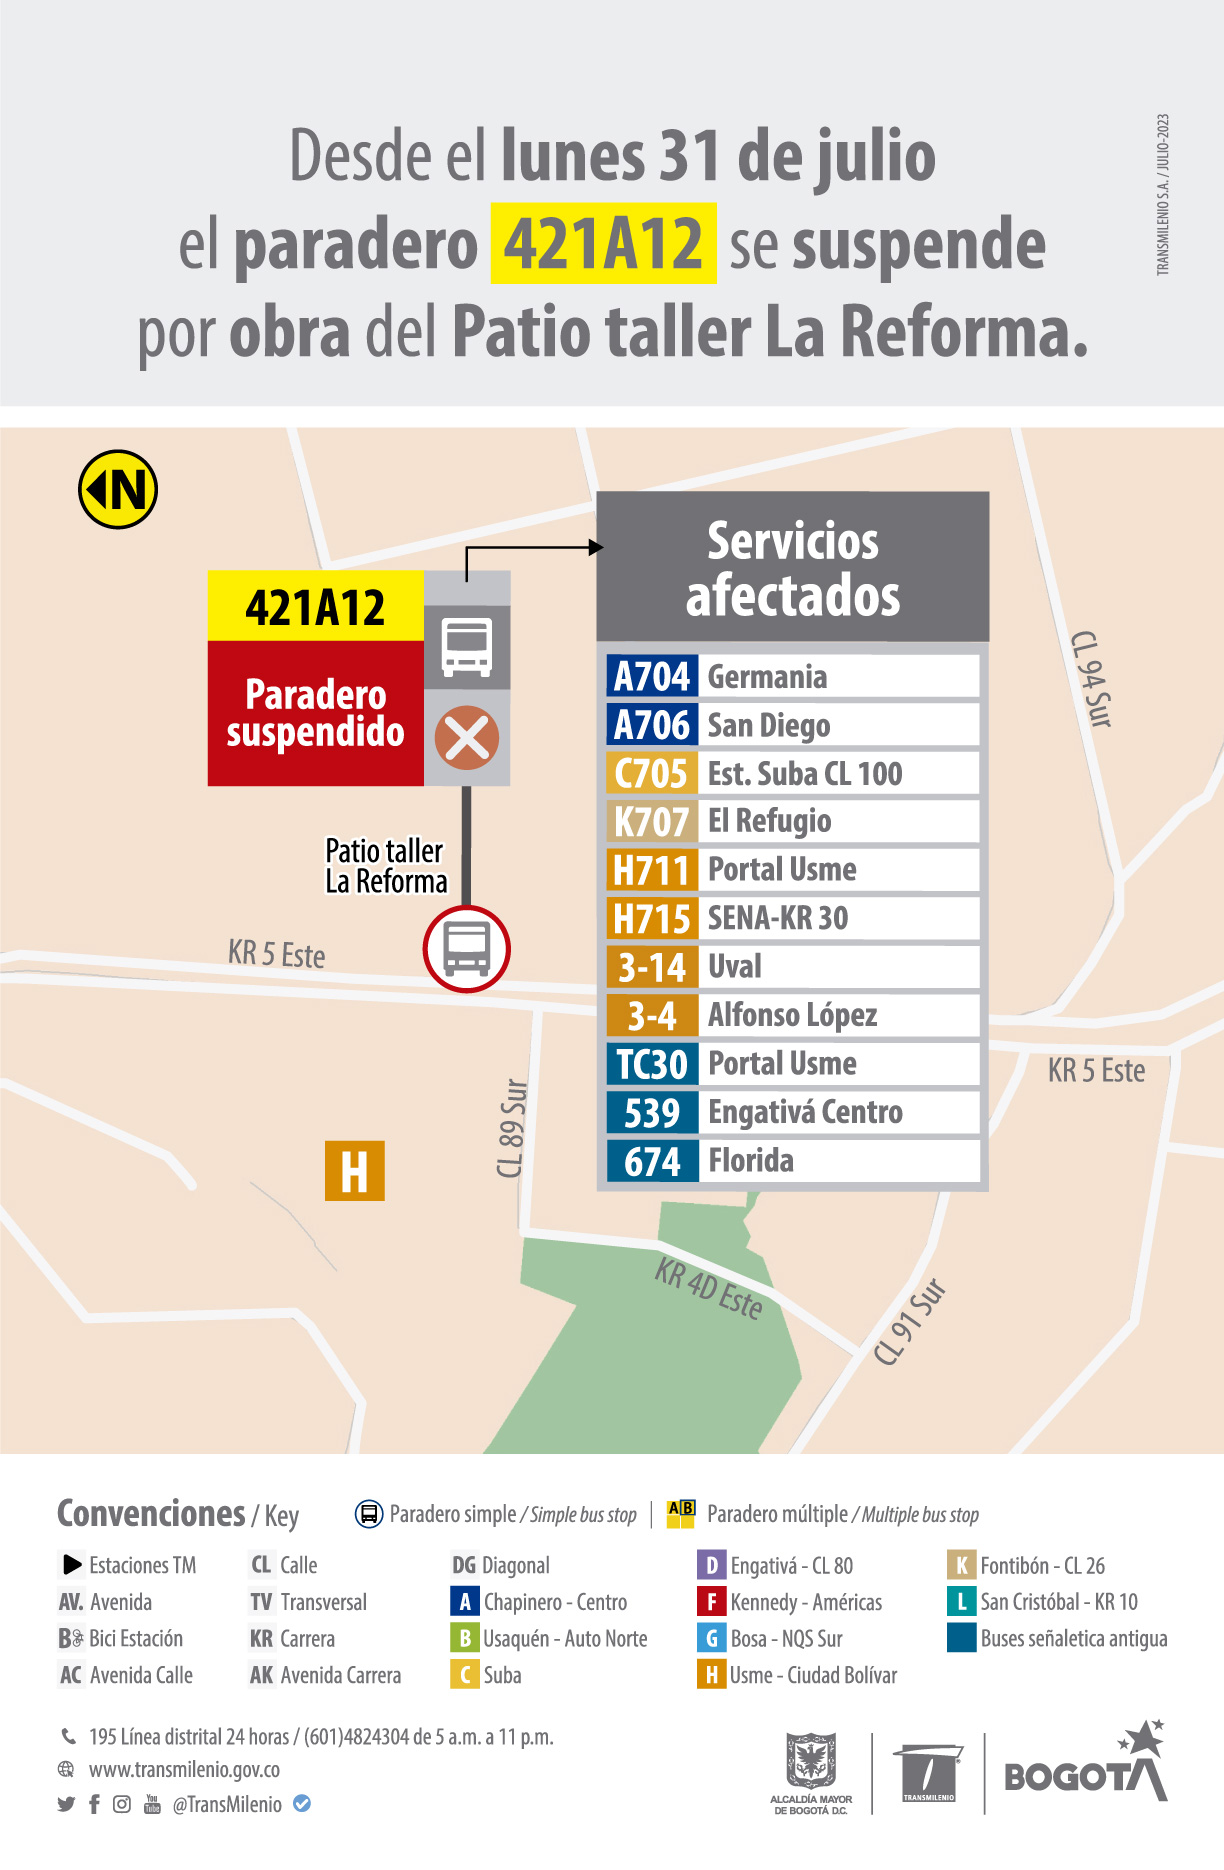  Se suspenderá el paradero 421A12 ubicado en la carrera 5 este, por obra de Patio taller La Reforma